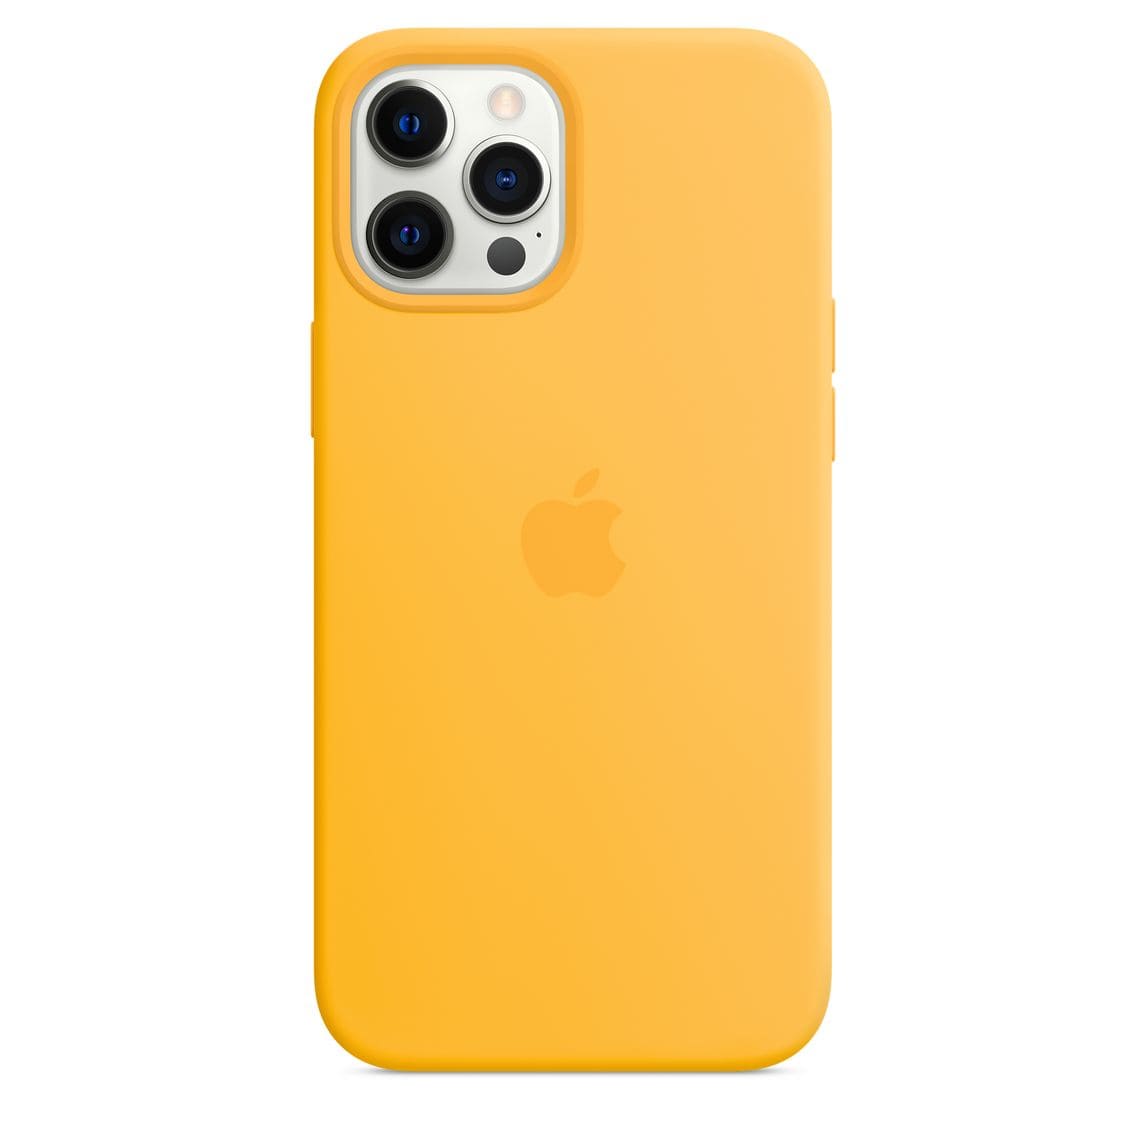 Фото — Чехол для смартфона Apple MagSafe для iPhone 12 Pro Max, cиликон, ярко-желтый